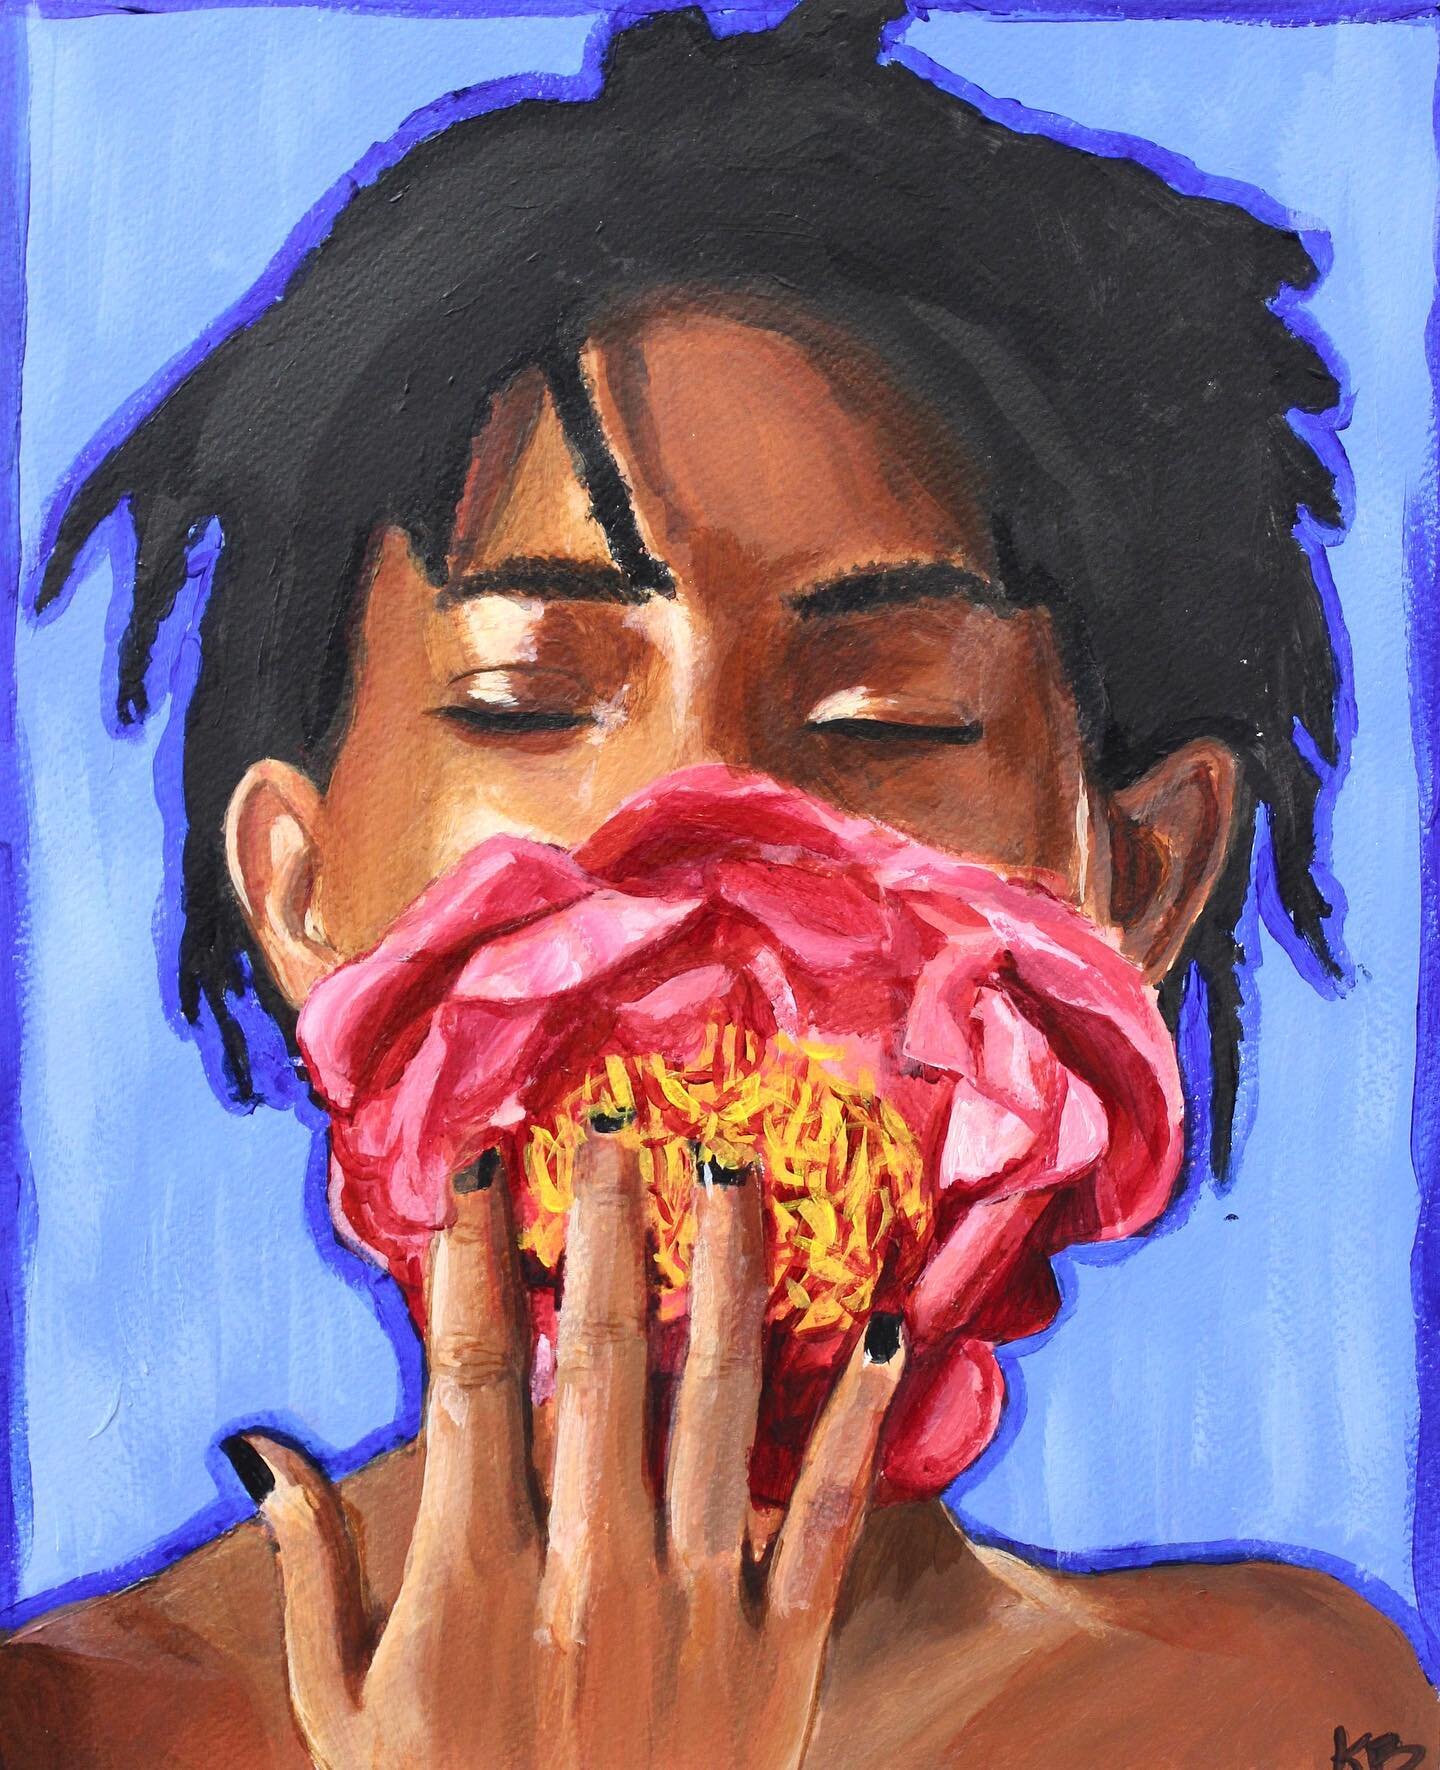 &ldquo;Willow&rdquo; Acrylic Painting
Artist: Katherine Brain, age 16
.
.
.
#acrylic #painting #acrylicpainting #instaart #art #artclass #artstudent #utahart #utahartist #sydneybowmanartclass
#portrait #portraitpainting #portraiture #flower